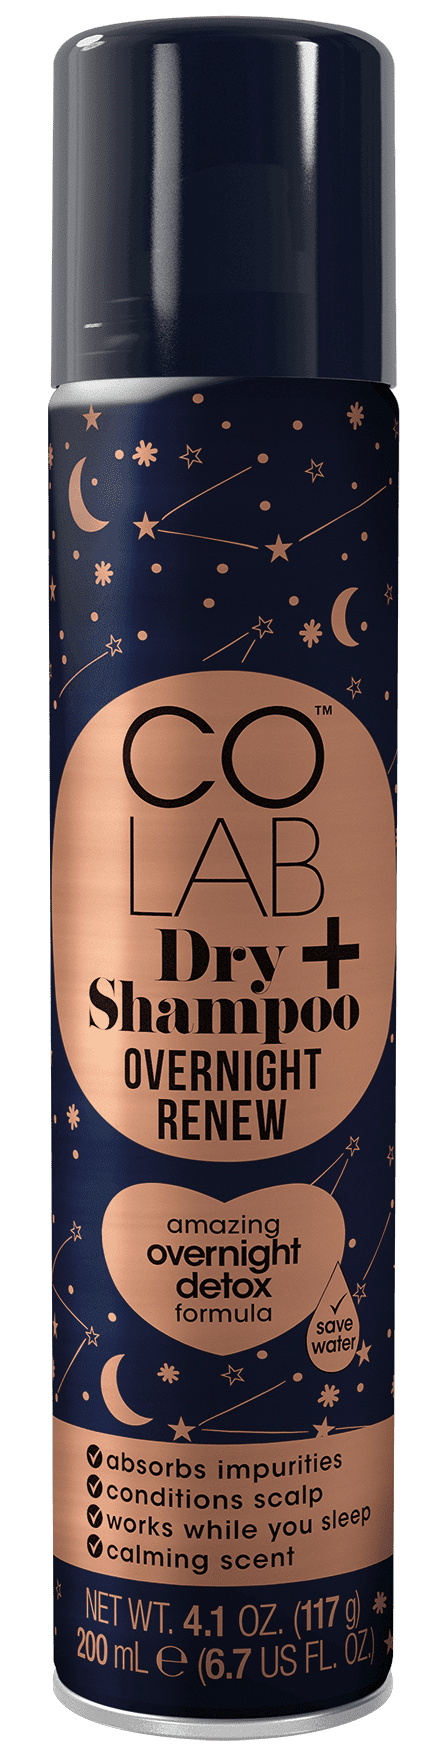 Colab Pernottamento Rinnovare Shampoo a Secco